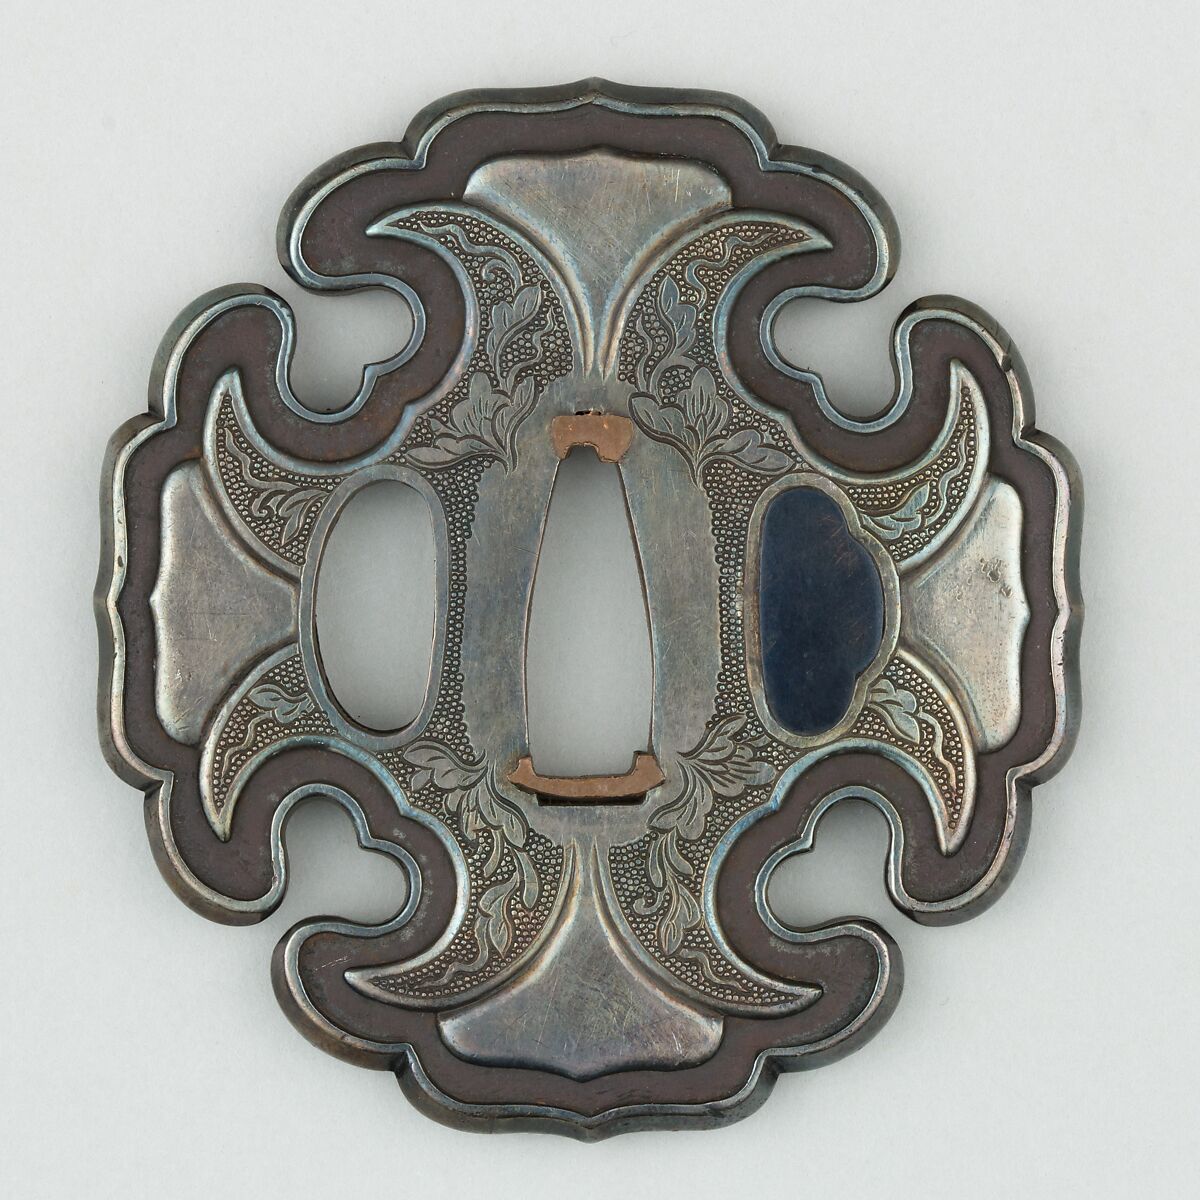 Sword Guard (Tsuba), Copper-silver alloy (shibuichi), silver, copper, Japanese 